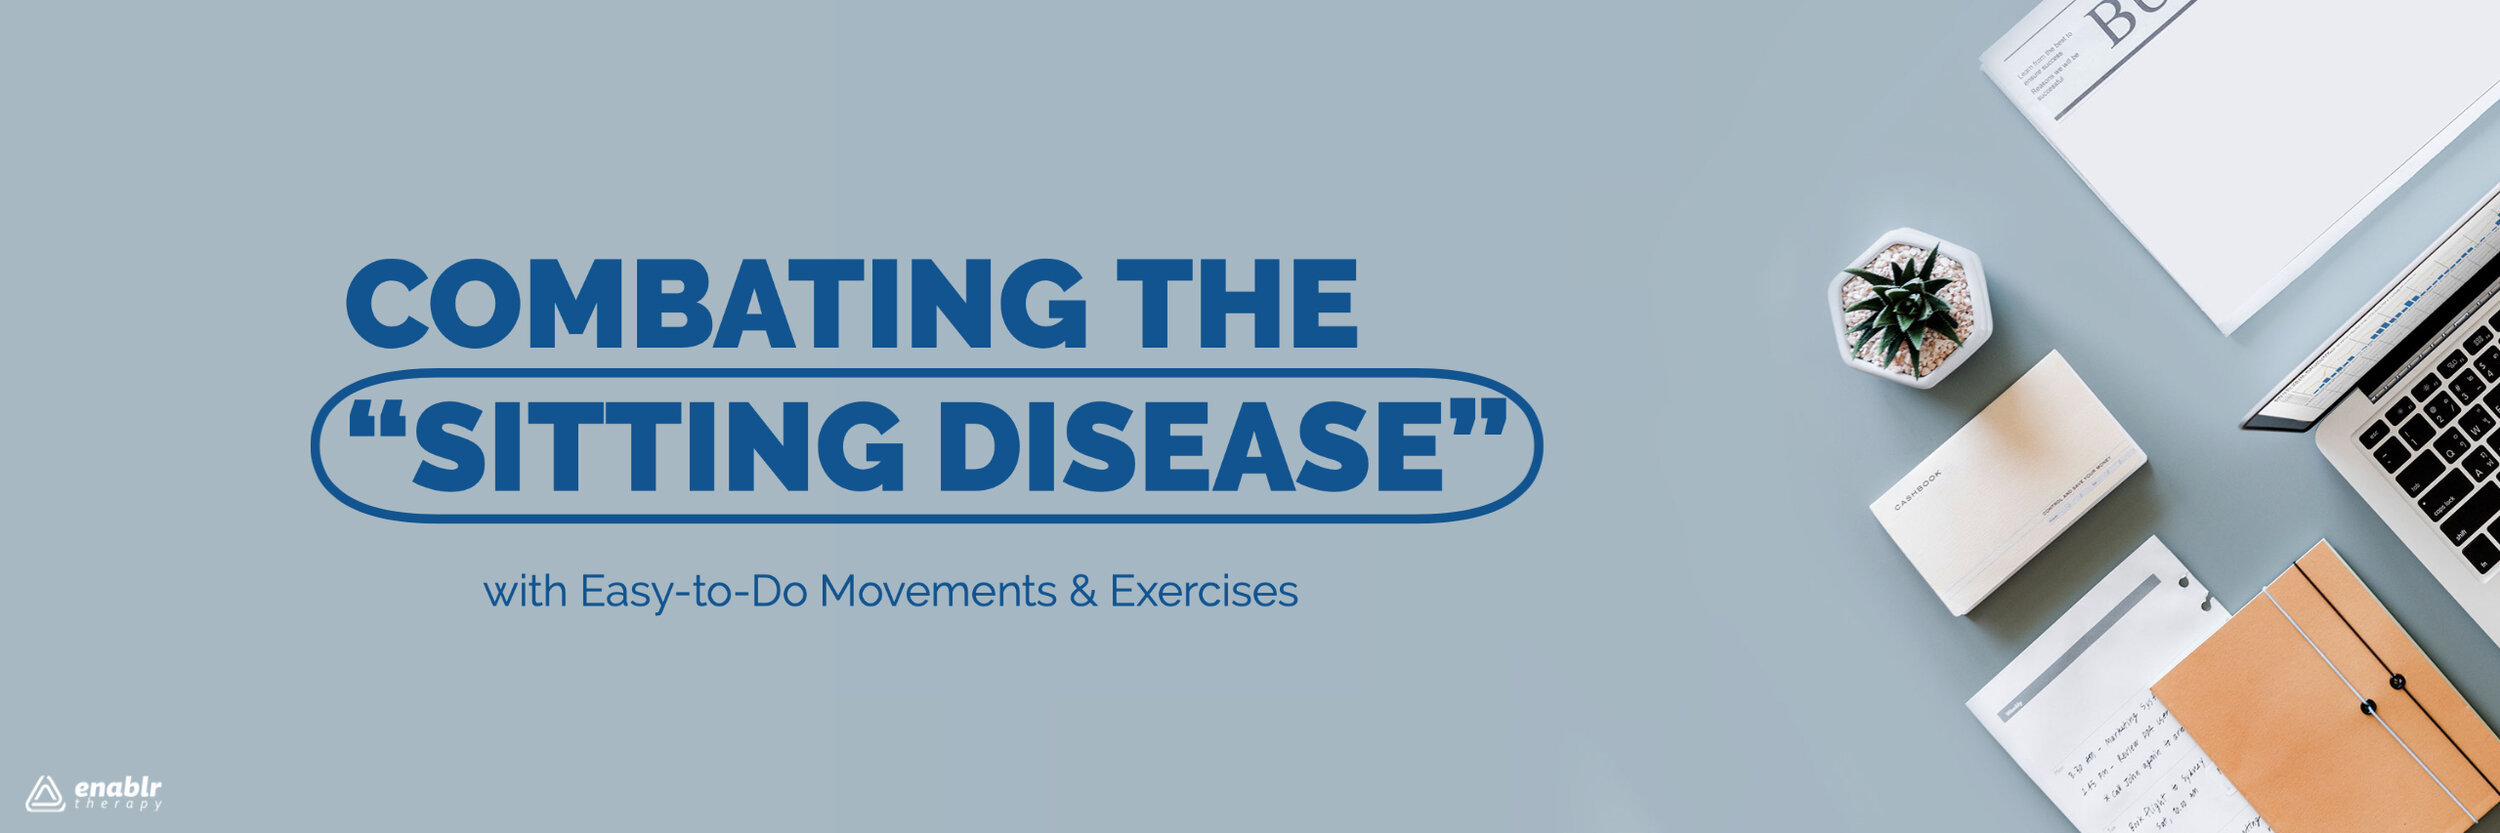 Sitting Disease Banner.jpg